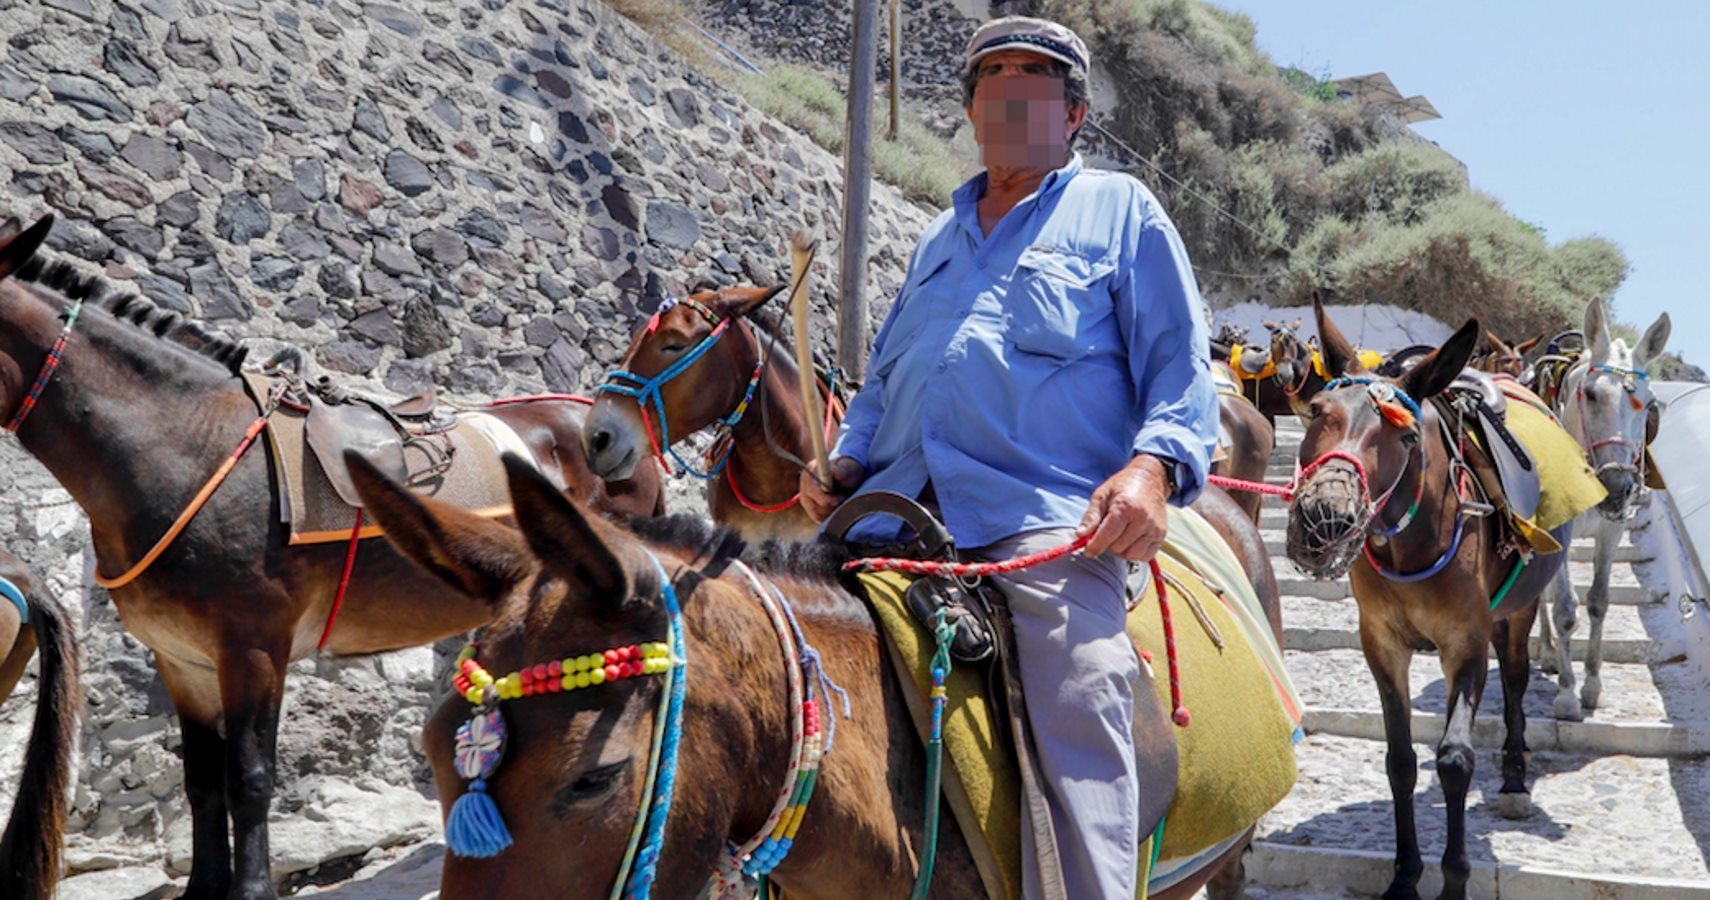 Grécia proíbe turistas com excesso de peso de passeios de burro em Santorini